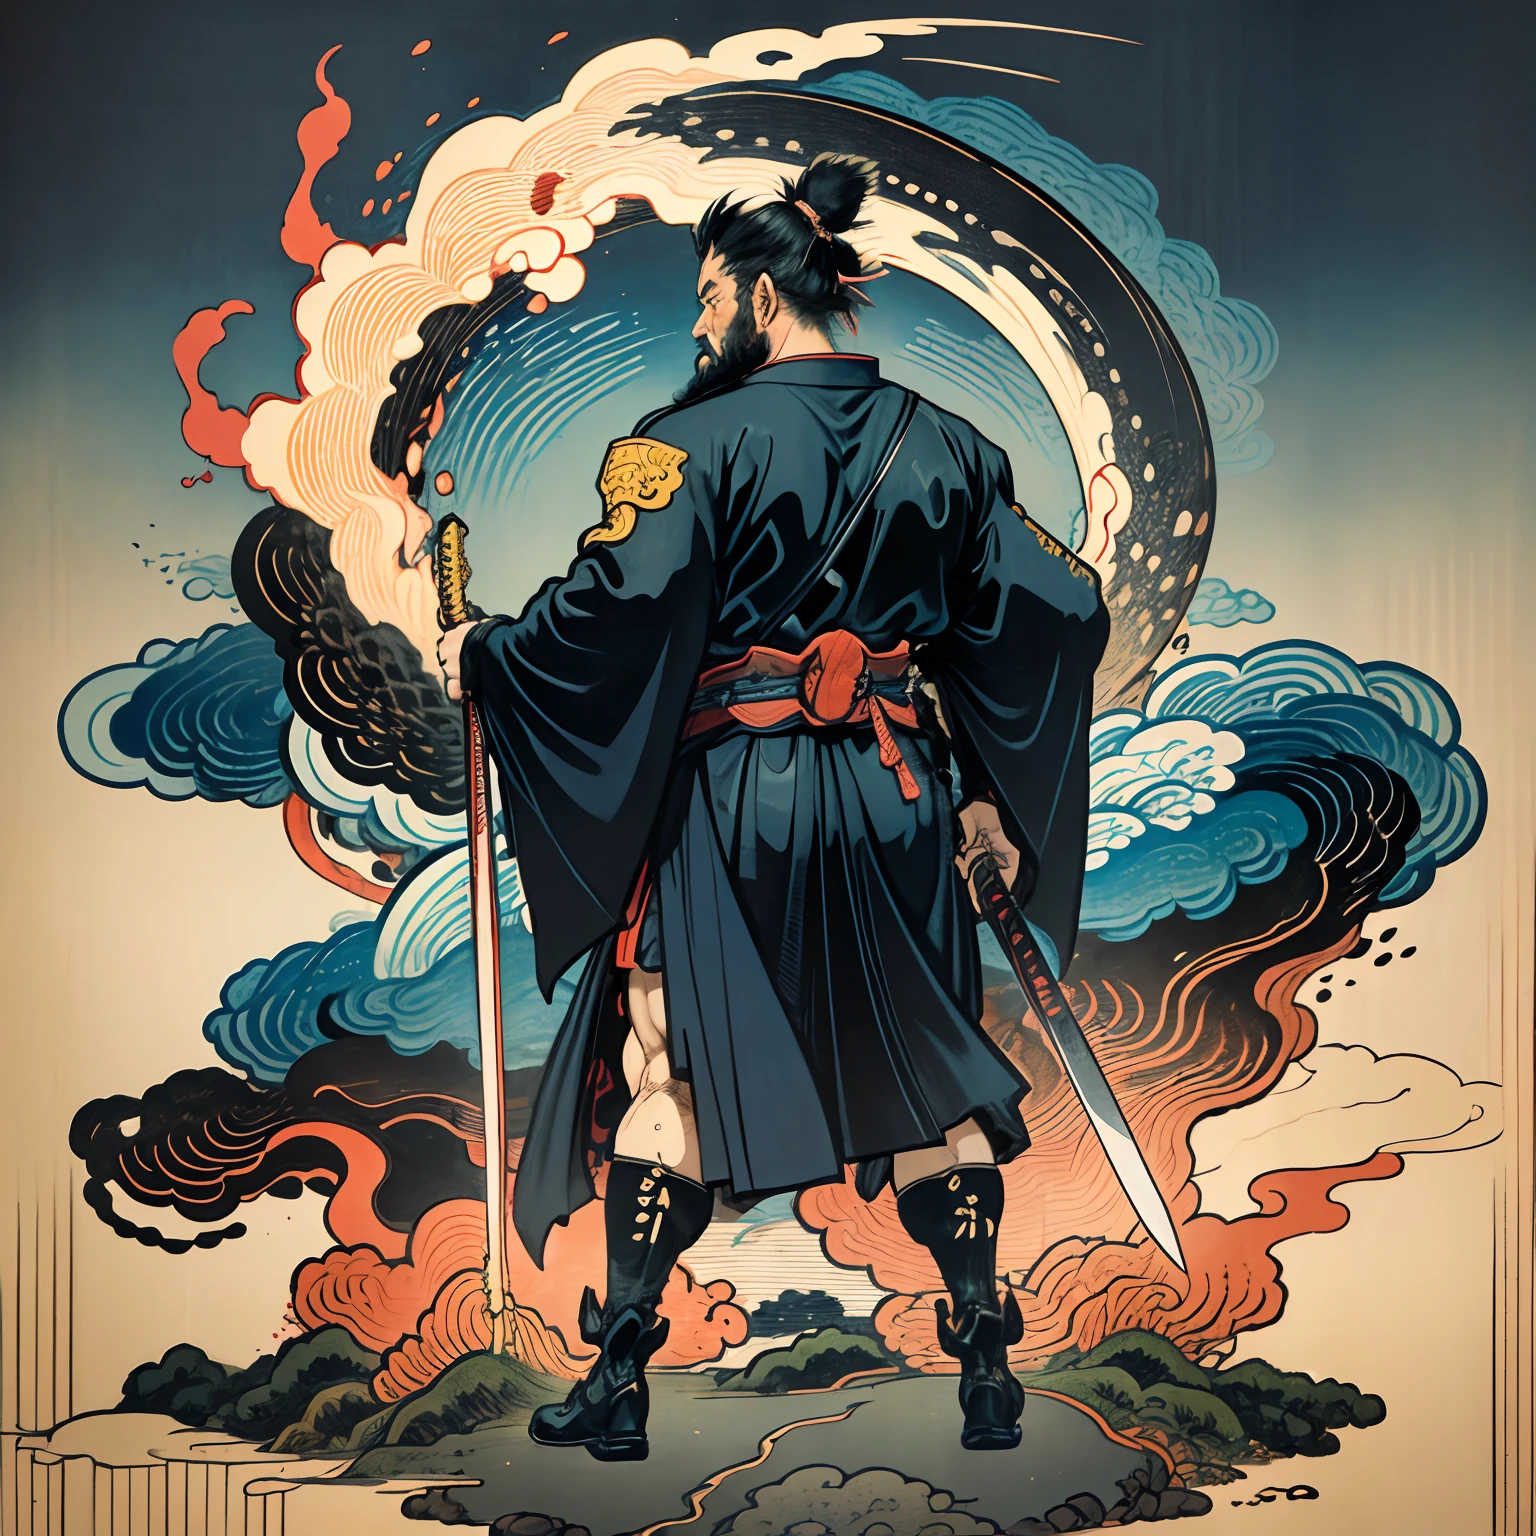 Es una pintura de cuerpo entero con colores naturales con dibujos lineales al estilo Katsushika Hokusai.. El espadachín Miyamoto Musashi tiene un cuerpo grande como el de un hombre fuerte.. Samurái de Japón. Tiene una expresión de determinación digna pero varonil., Pelo negro corto, y un corto, barba recortada. La parte superior de su cuerpo está cubierta con un kimono negro y su hakama llega hasta las rodillas.. En su mano derecha sostiene una espada japonesa.. en la más alta calidad, en alta resolución, estilo ukiyo-e, relámpagos y llamas arremolinadas de la obra maestra. Miyamoto Musashi está de pie con la cara y el cuerpo mirando hacia adelante., su espalda recta.